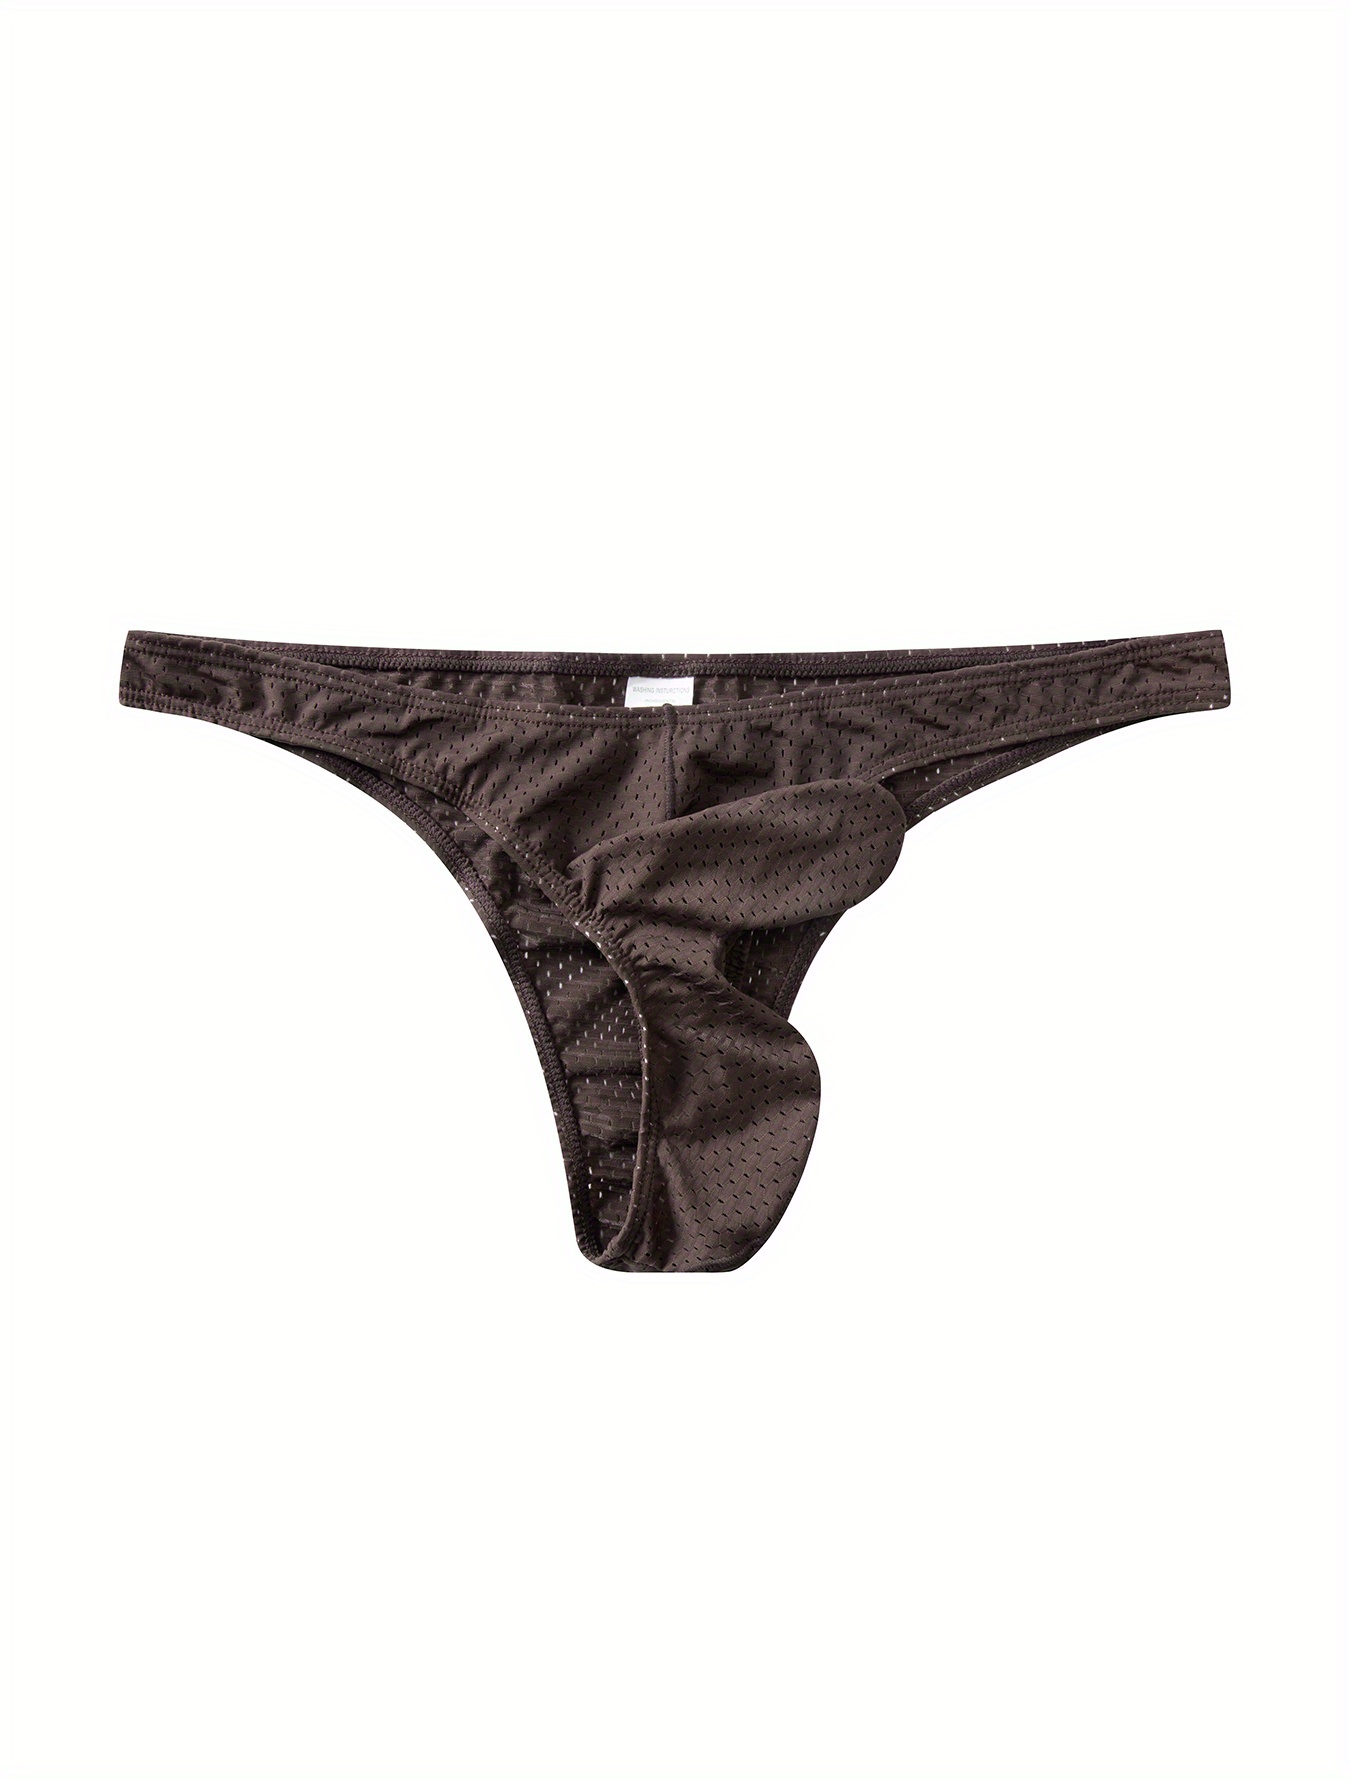 Men Elephant Underwear Underwear Elephant Trunk Underpants Elephant Trunk  Underwear Men's Thong G-String Comfort Sexy Underwear